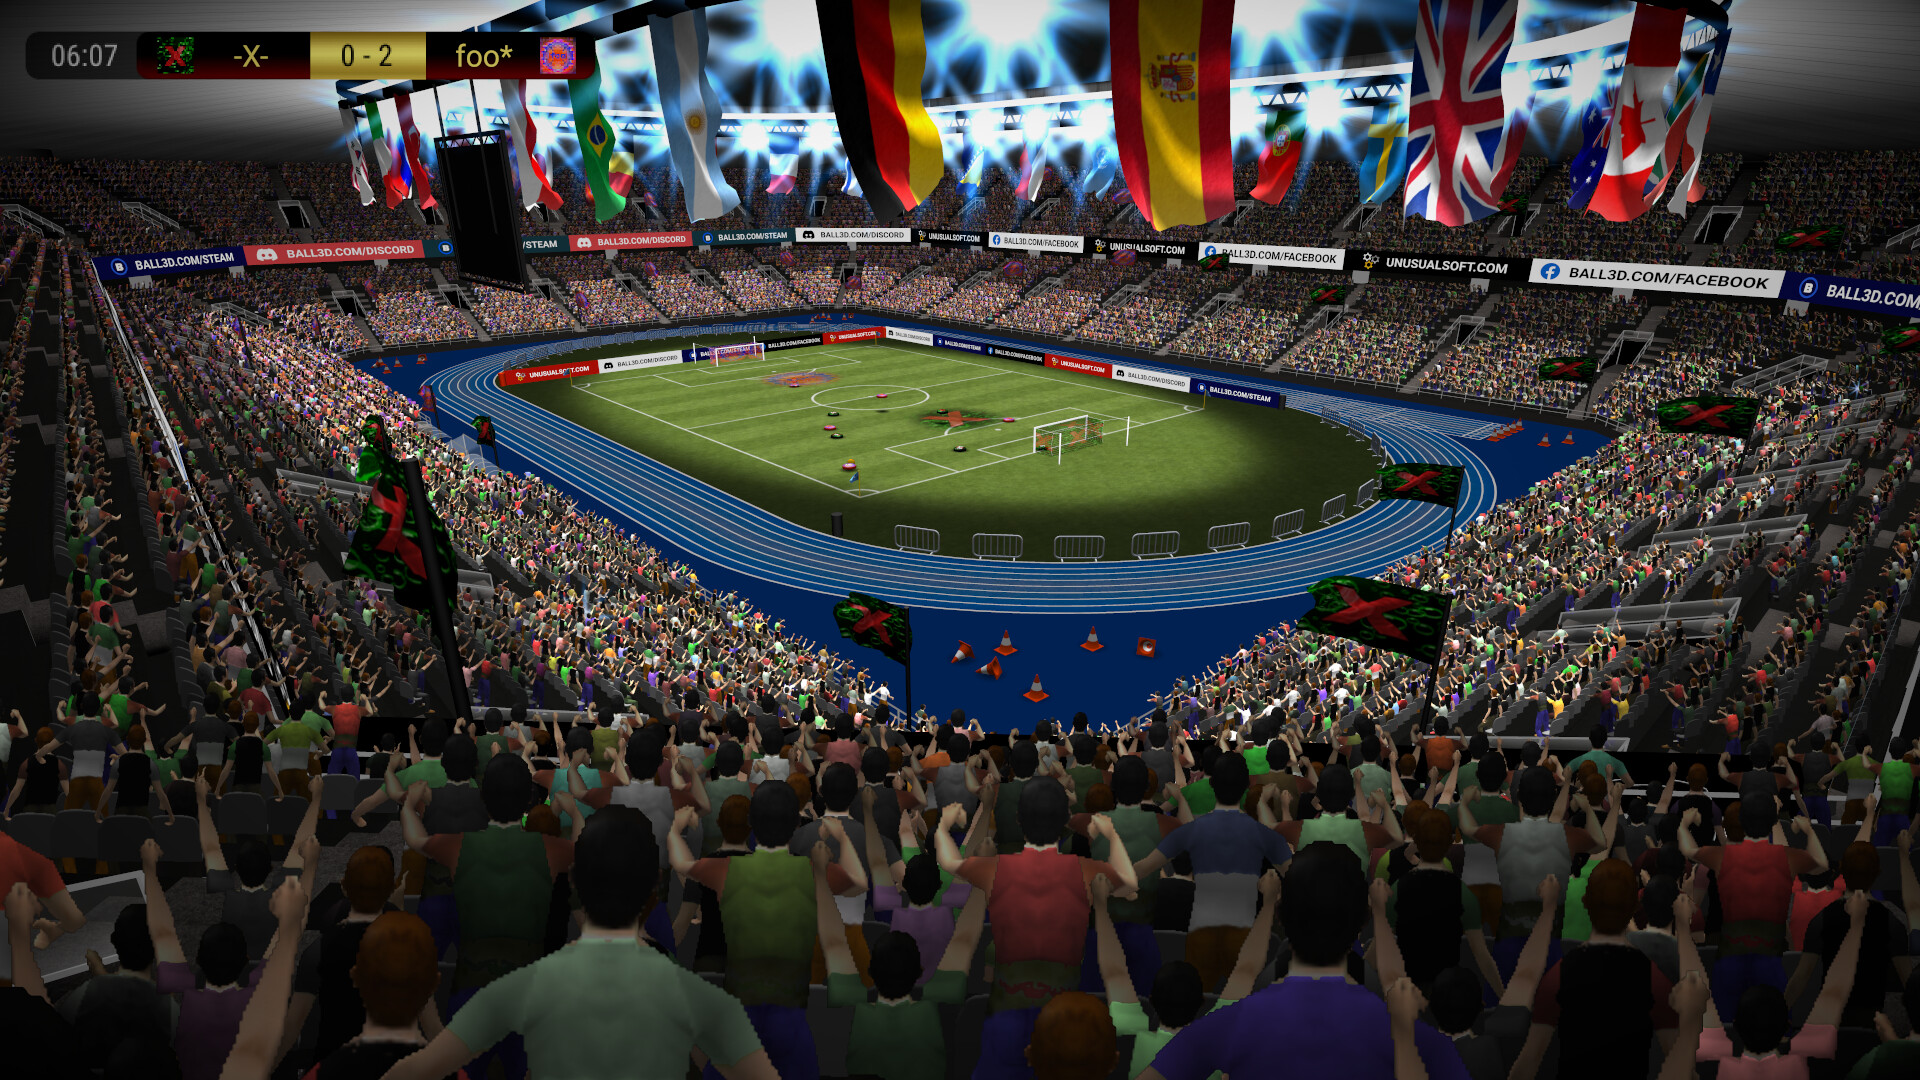 Ball 3D Soccer Online - обзор игры, новости, дата выхода, системные требования, купить игру за 21 руб., подборка похожих игр